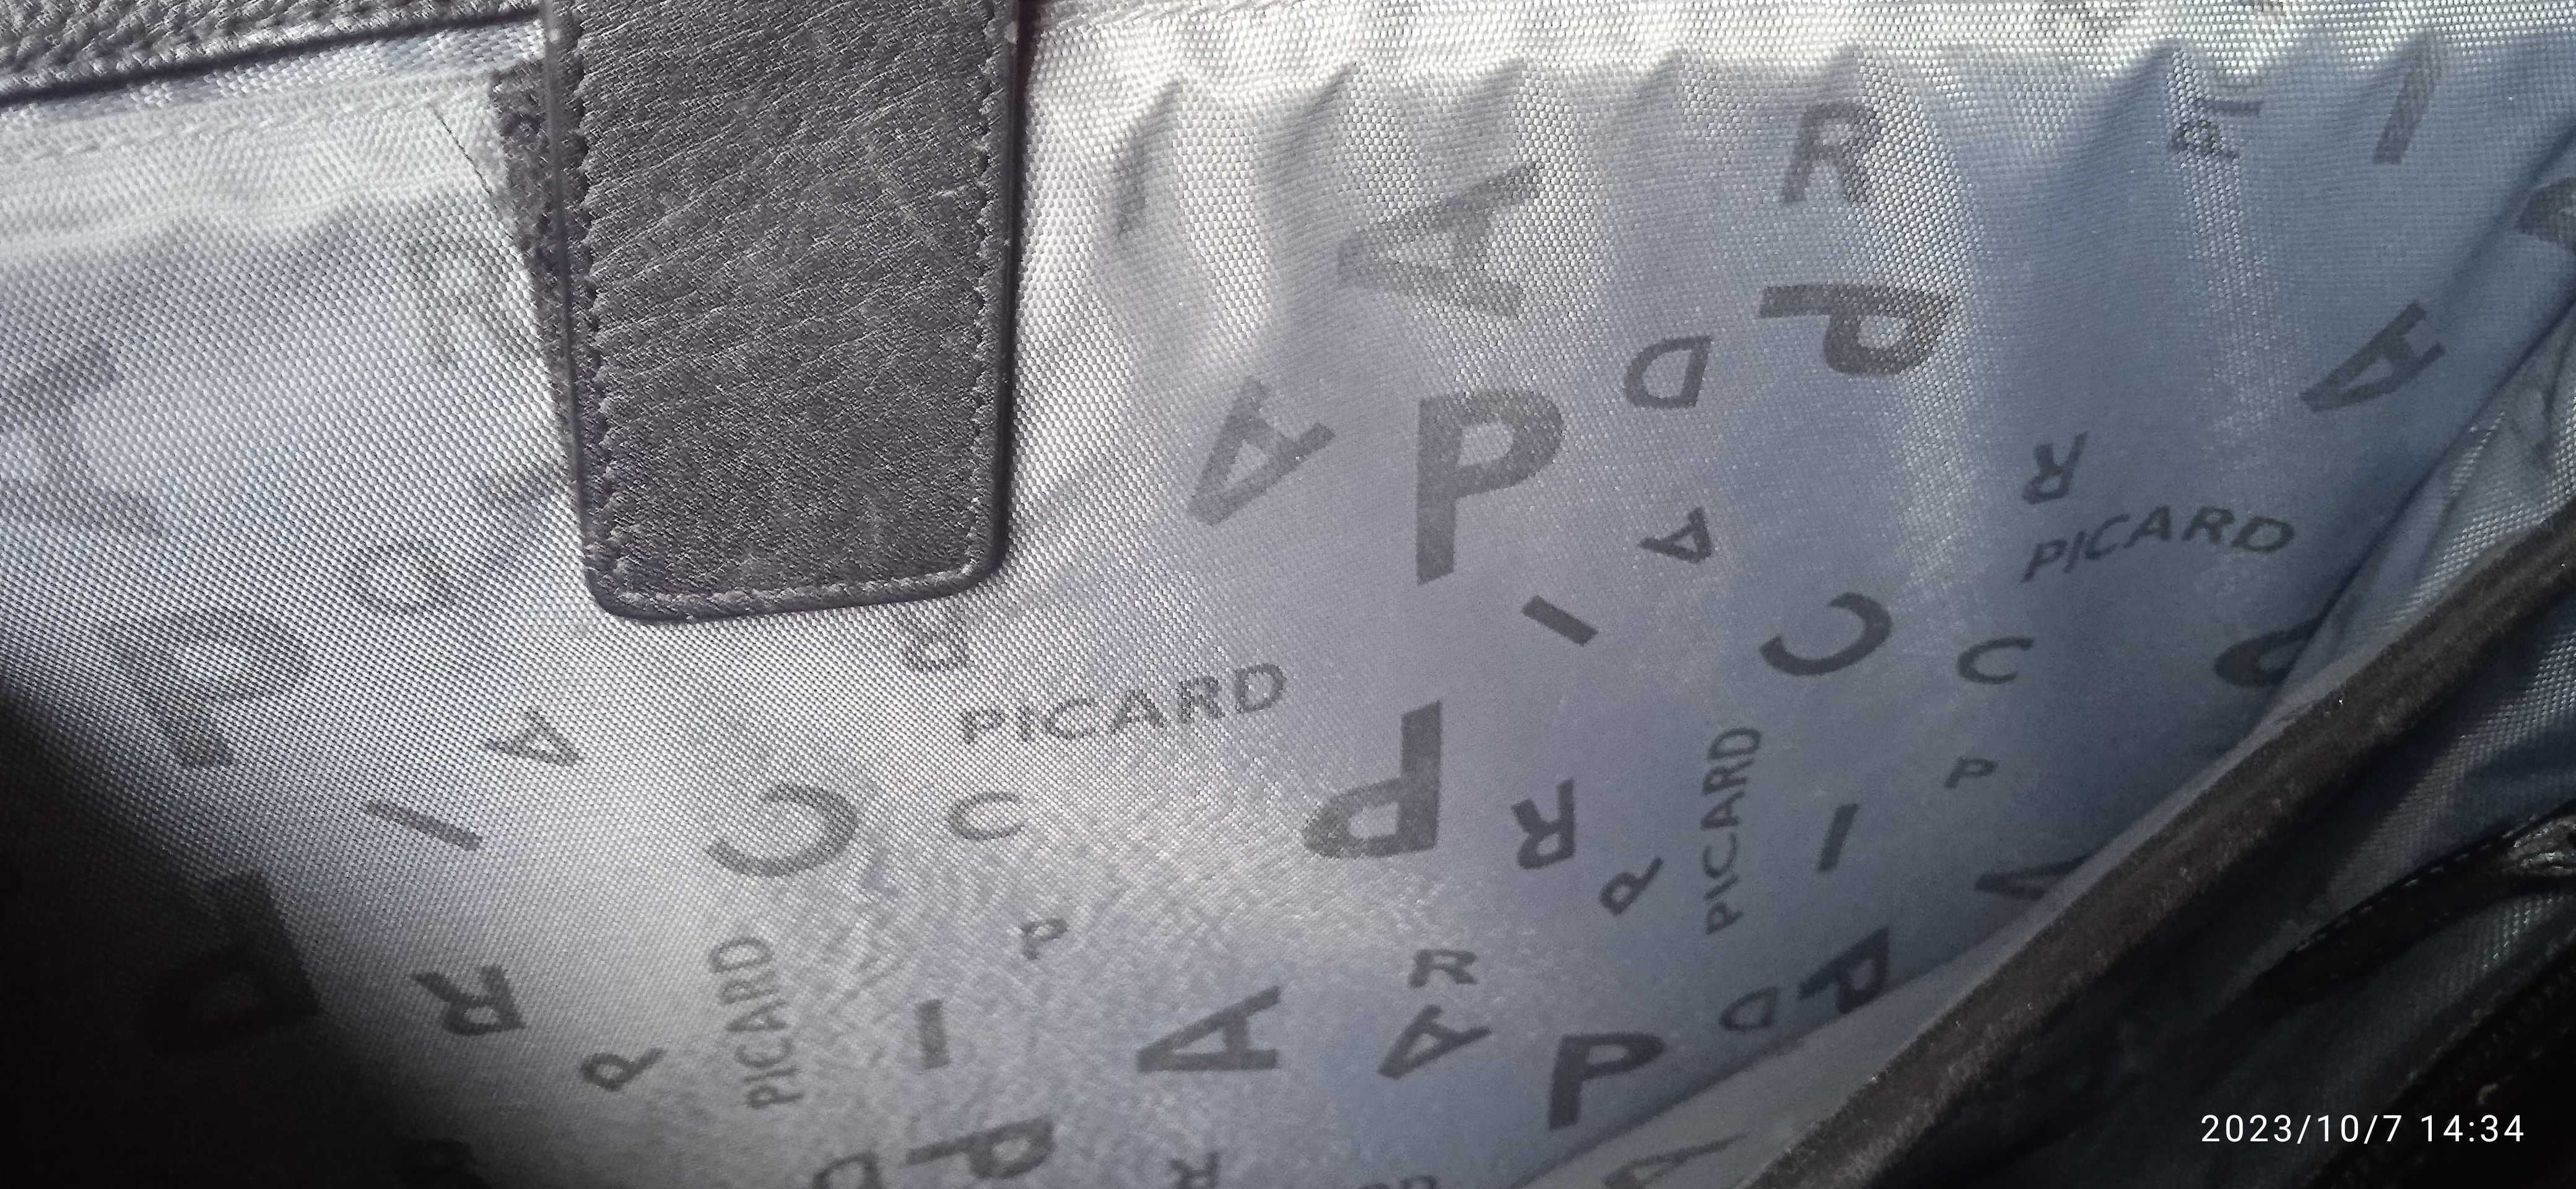 Кожаный портфель "PICARD" (Германия) Казахстан